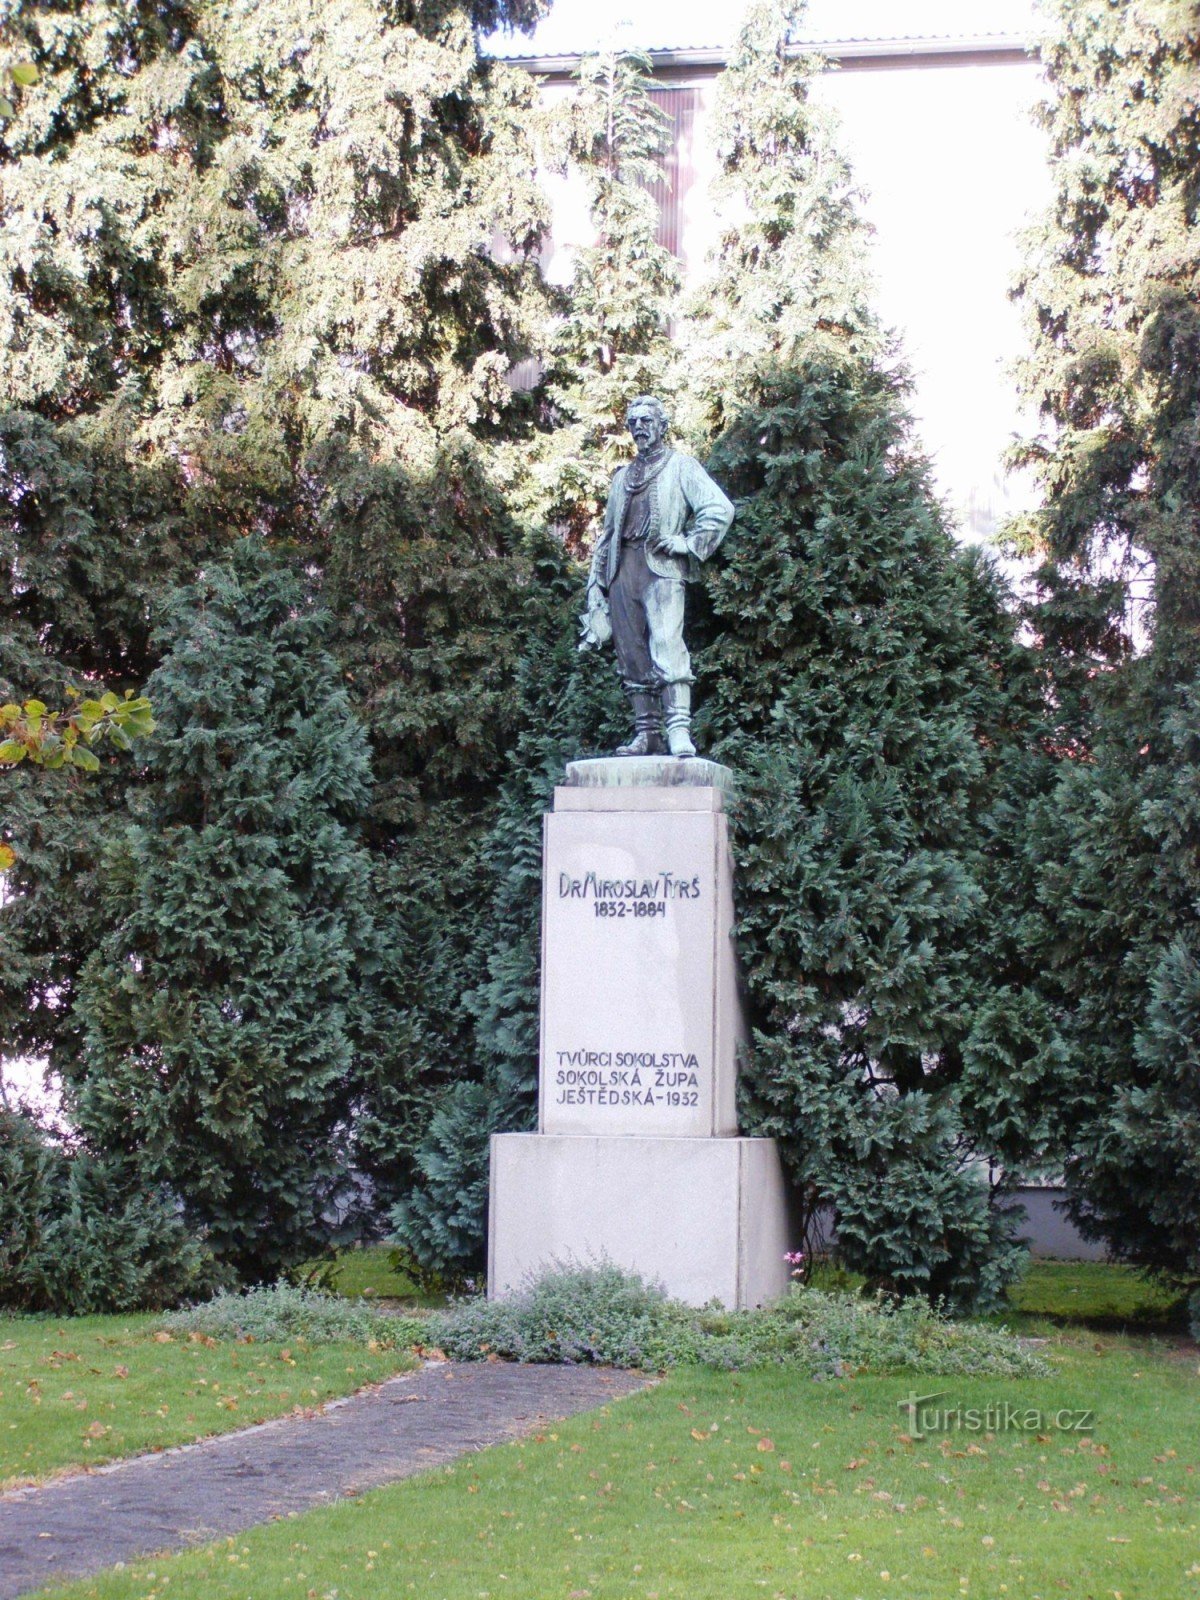 Turnov - monument au Dr. Miroslav Tyrš